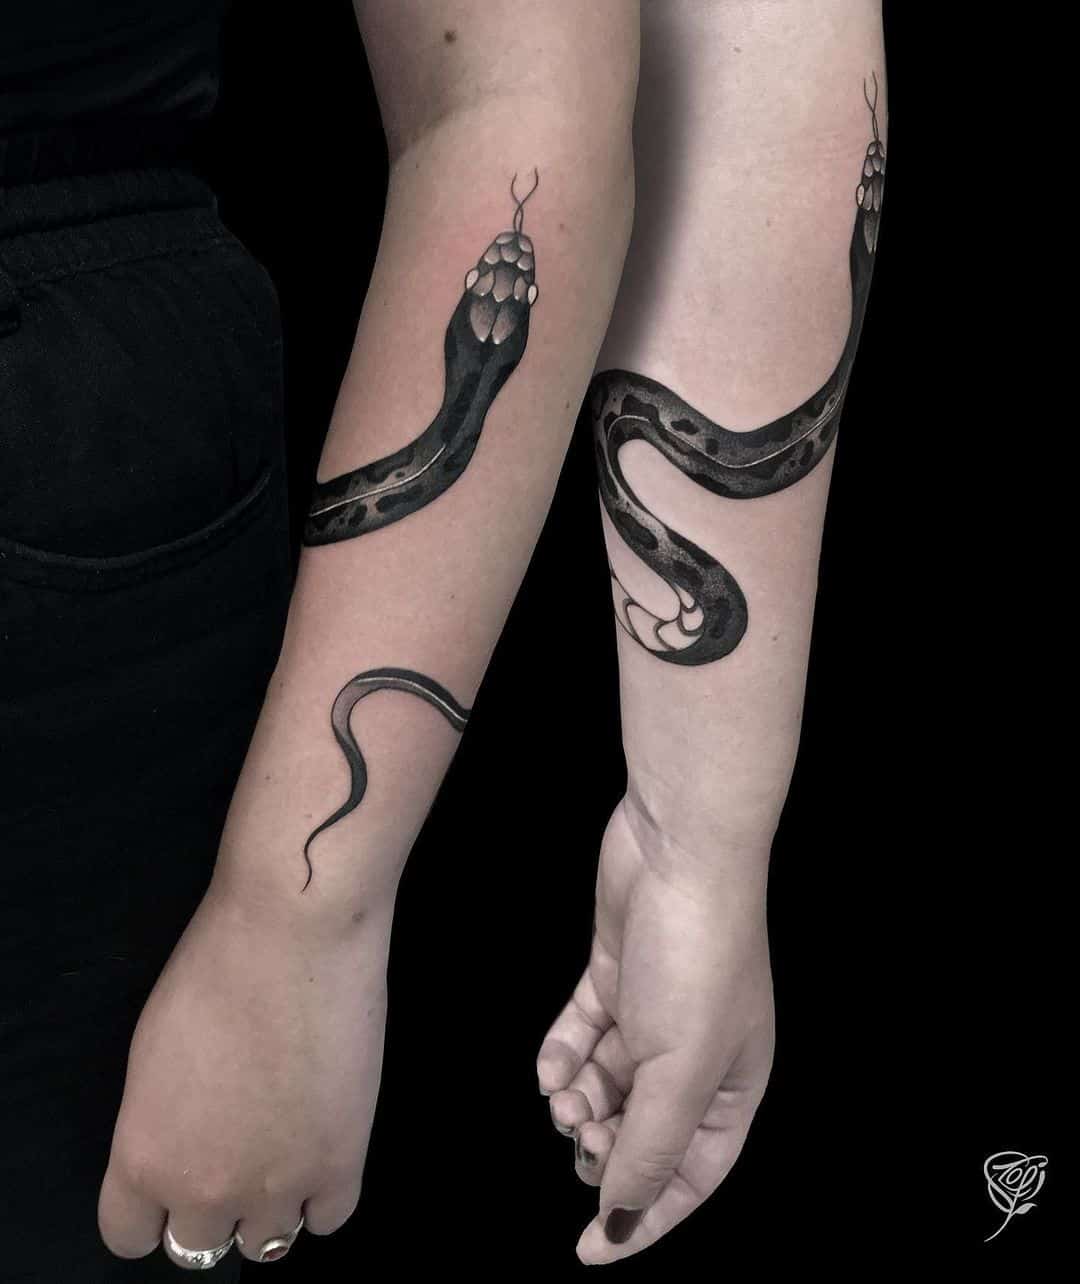 Couple matching snake tattoo